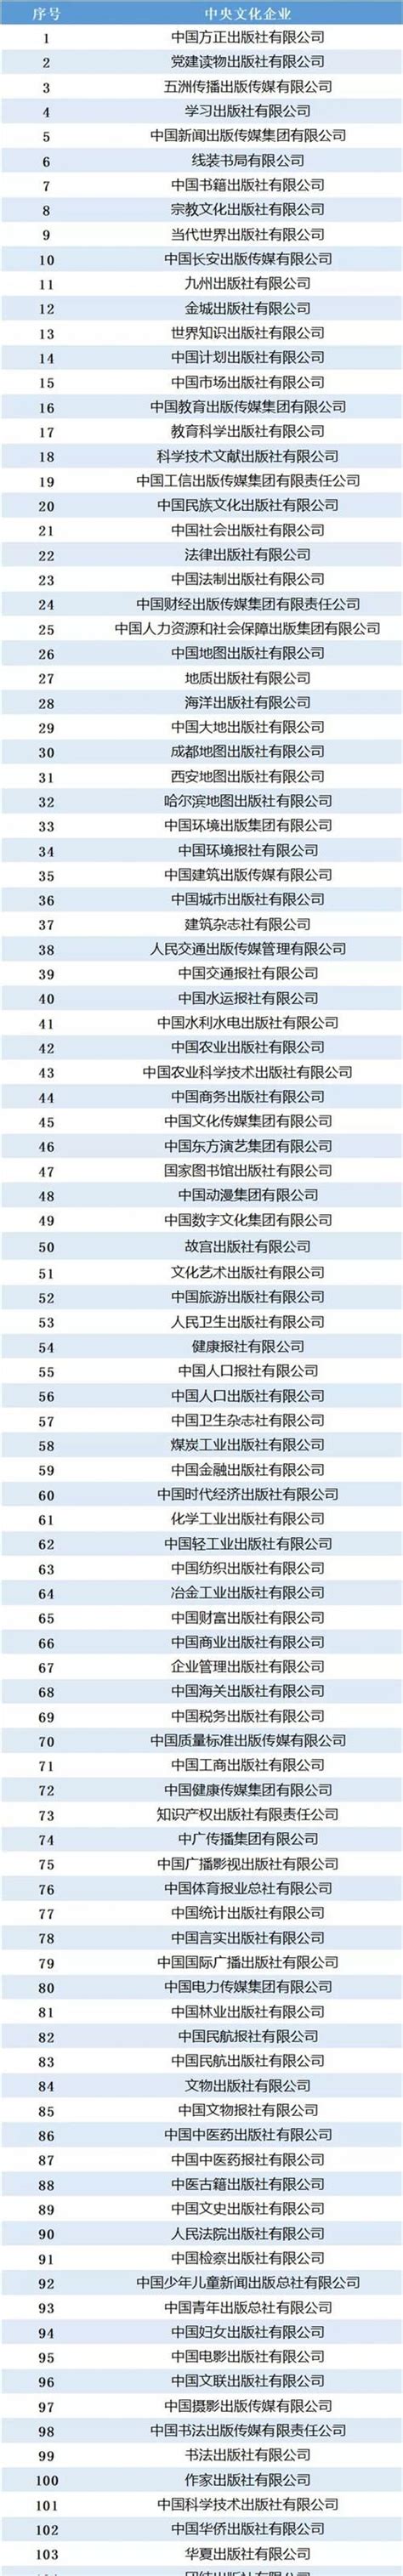 央企排名00名名单,中国有哪些中央企业 - 品尚生活网